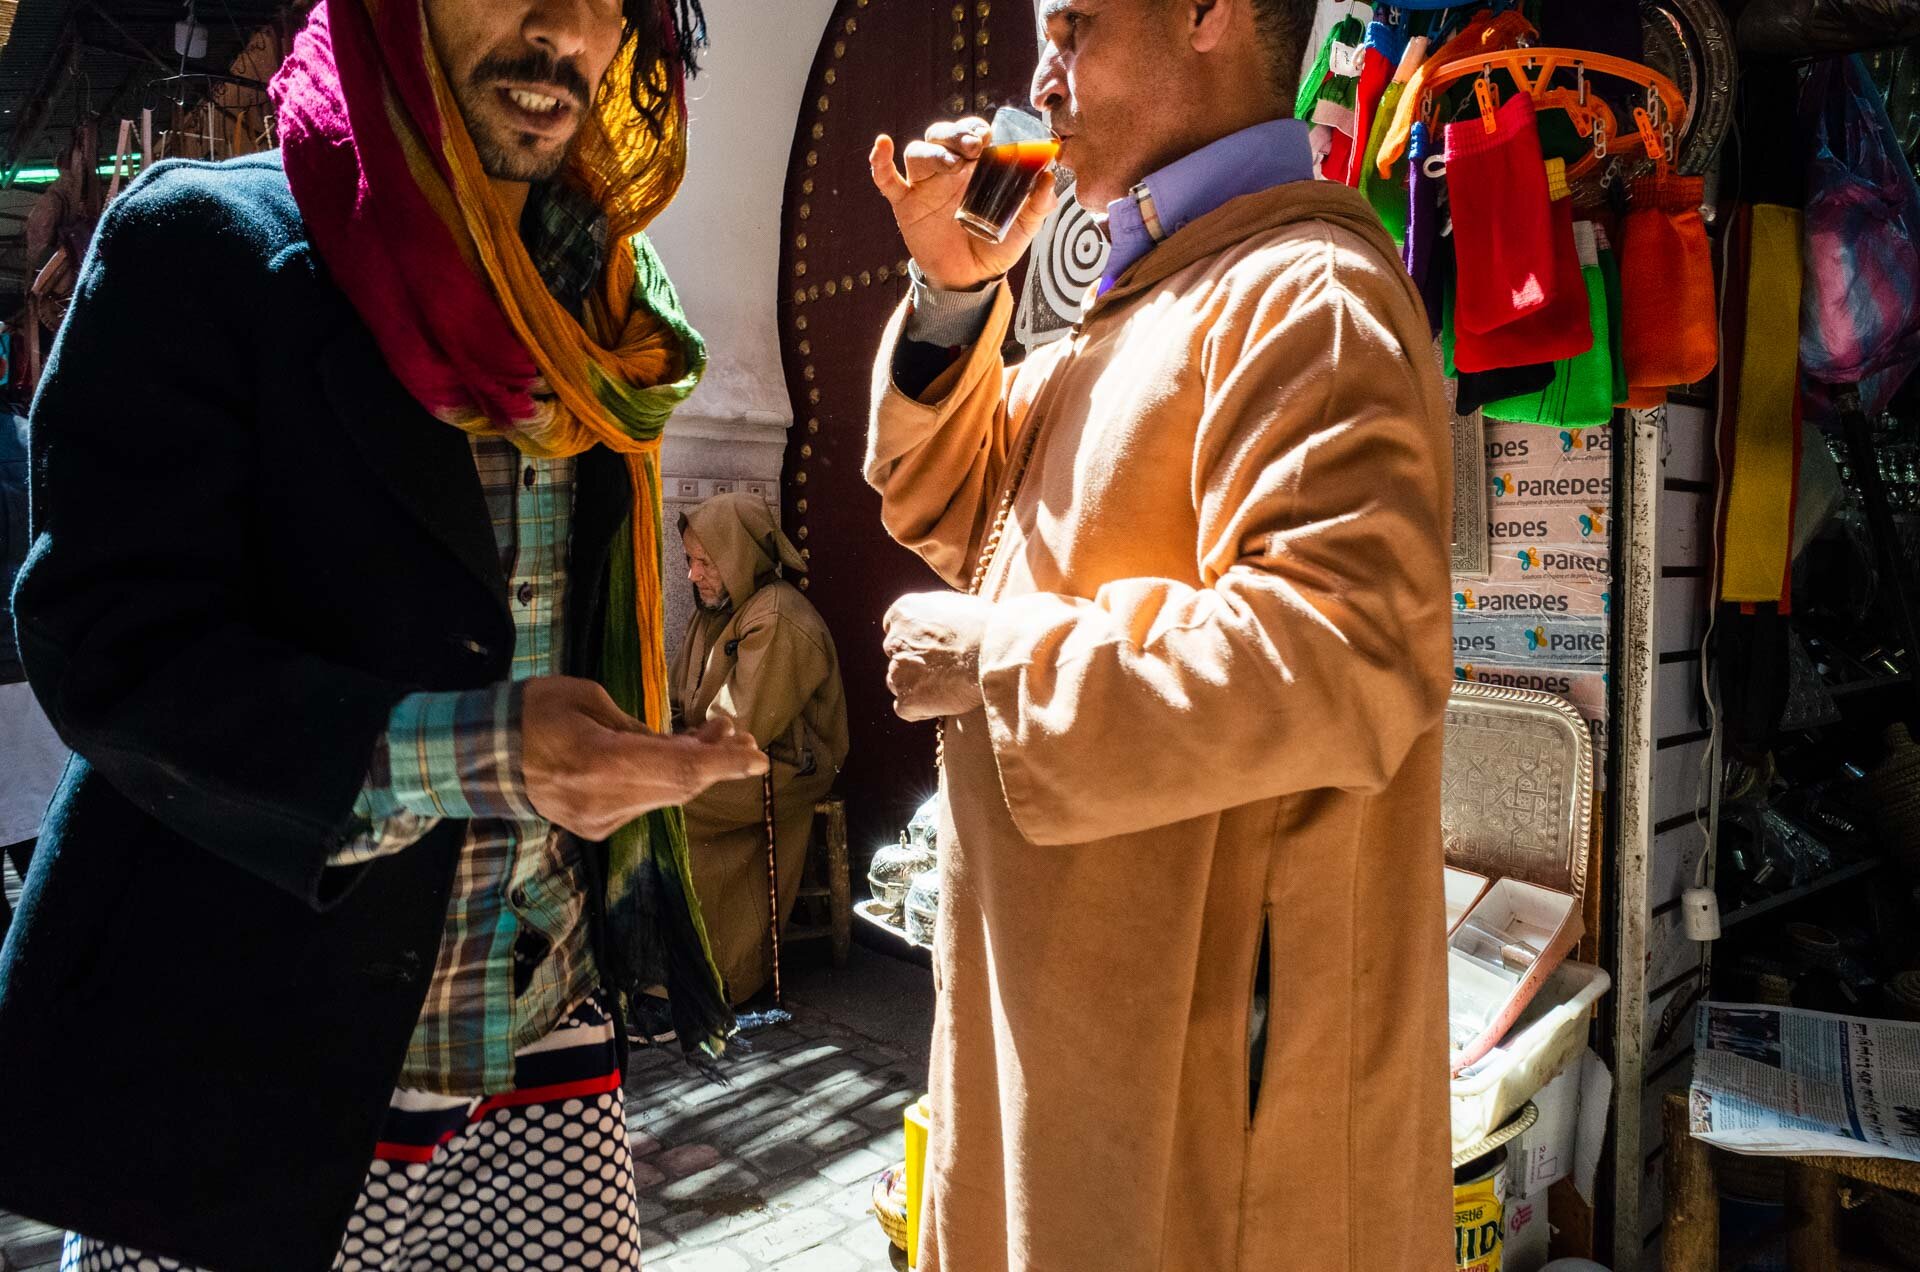 Marocco, marocco on the road, viaggio in marocco, marrakech, medina, bazar, viaggio di coppia, viaggo in marocco itinerario, marrakech marocco, marrakech riad, marrakech hotel, marrakech cosa vedere, marrakech cosa fare-31.jpg